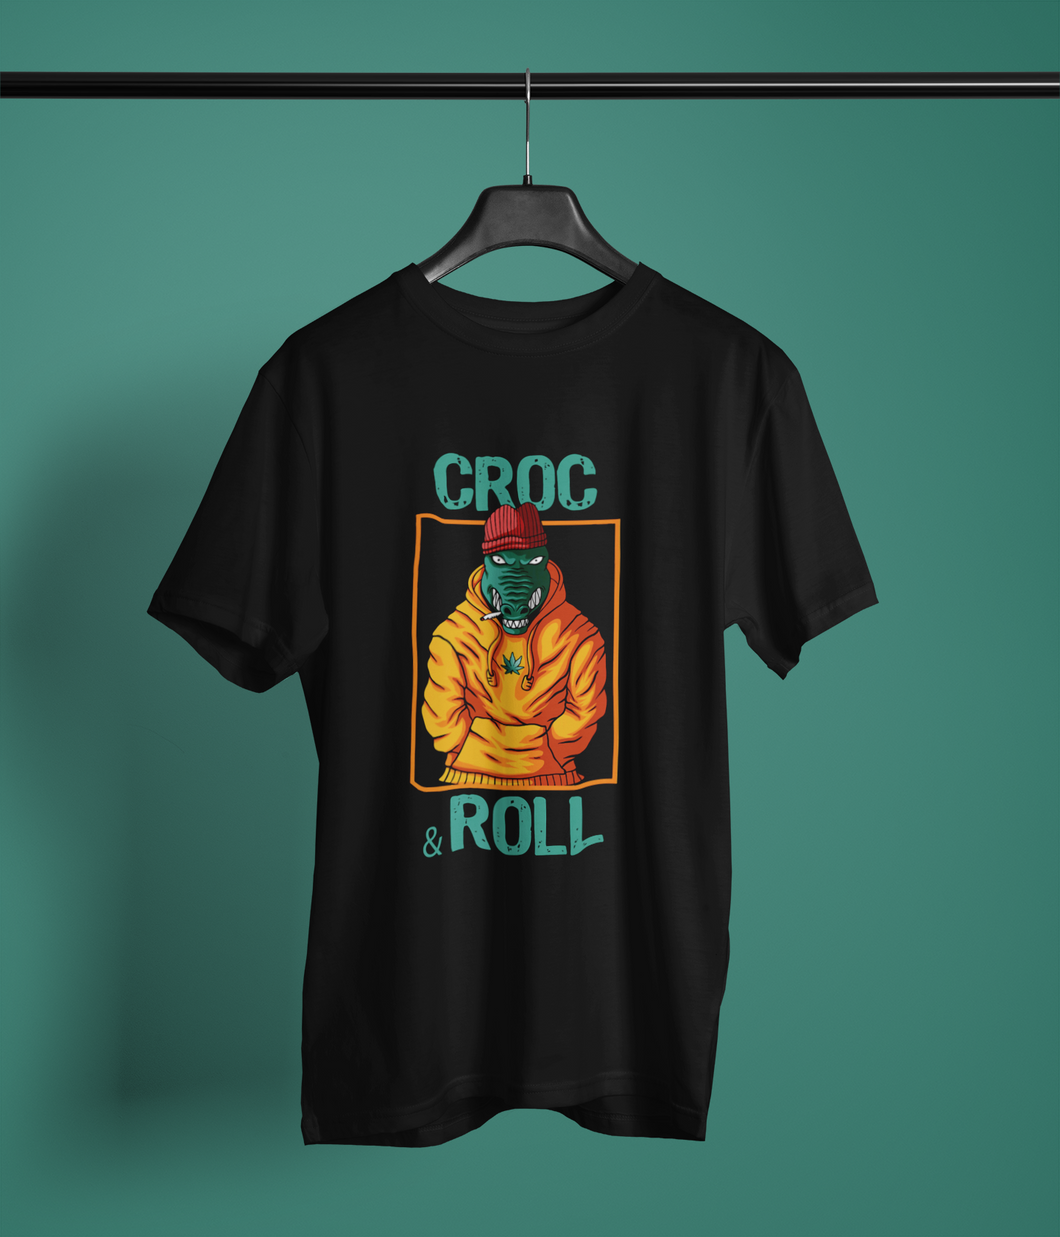 Croc & Roll